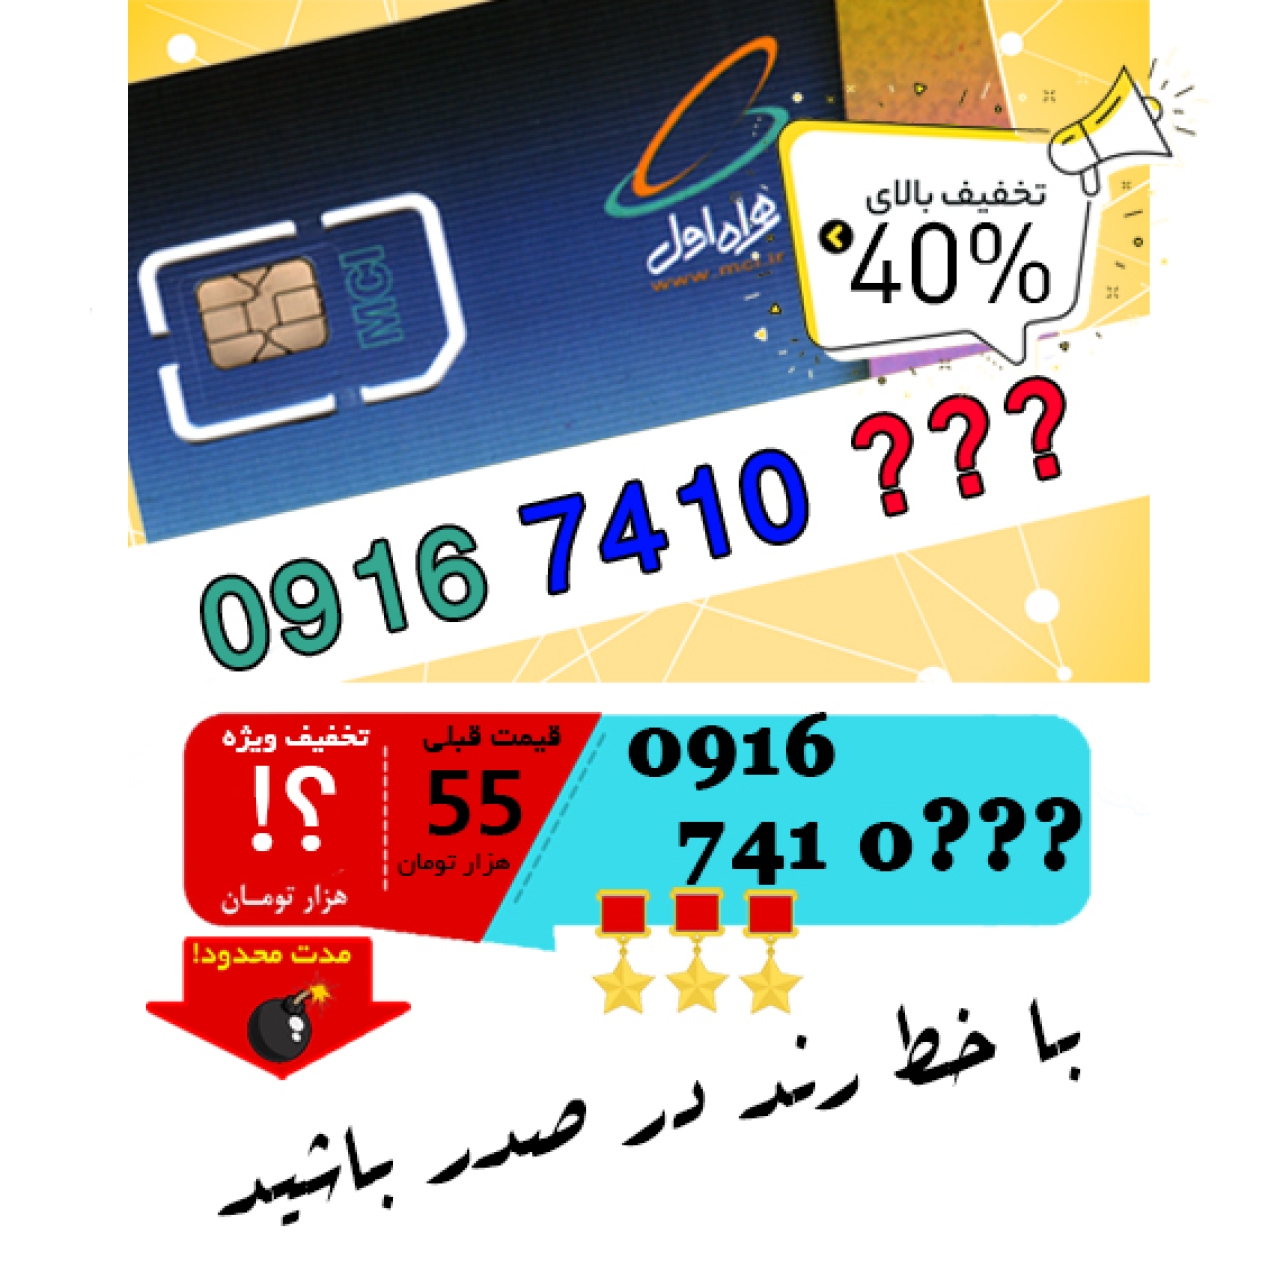 حراج سیم کارت اعتباری همراه اول 09167410